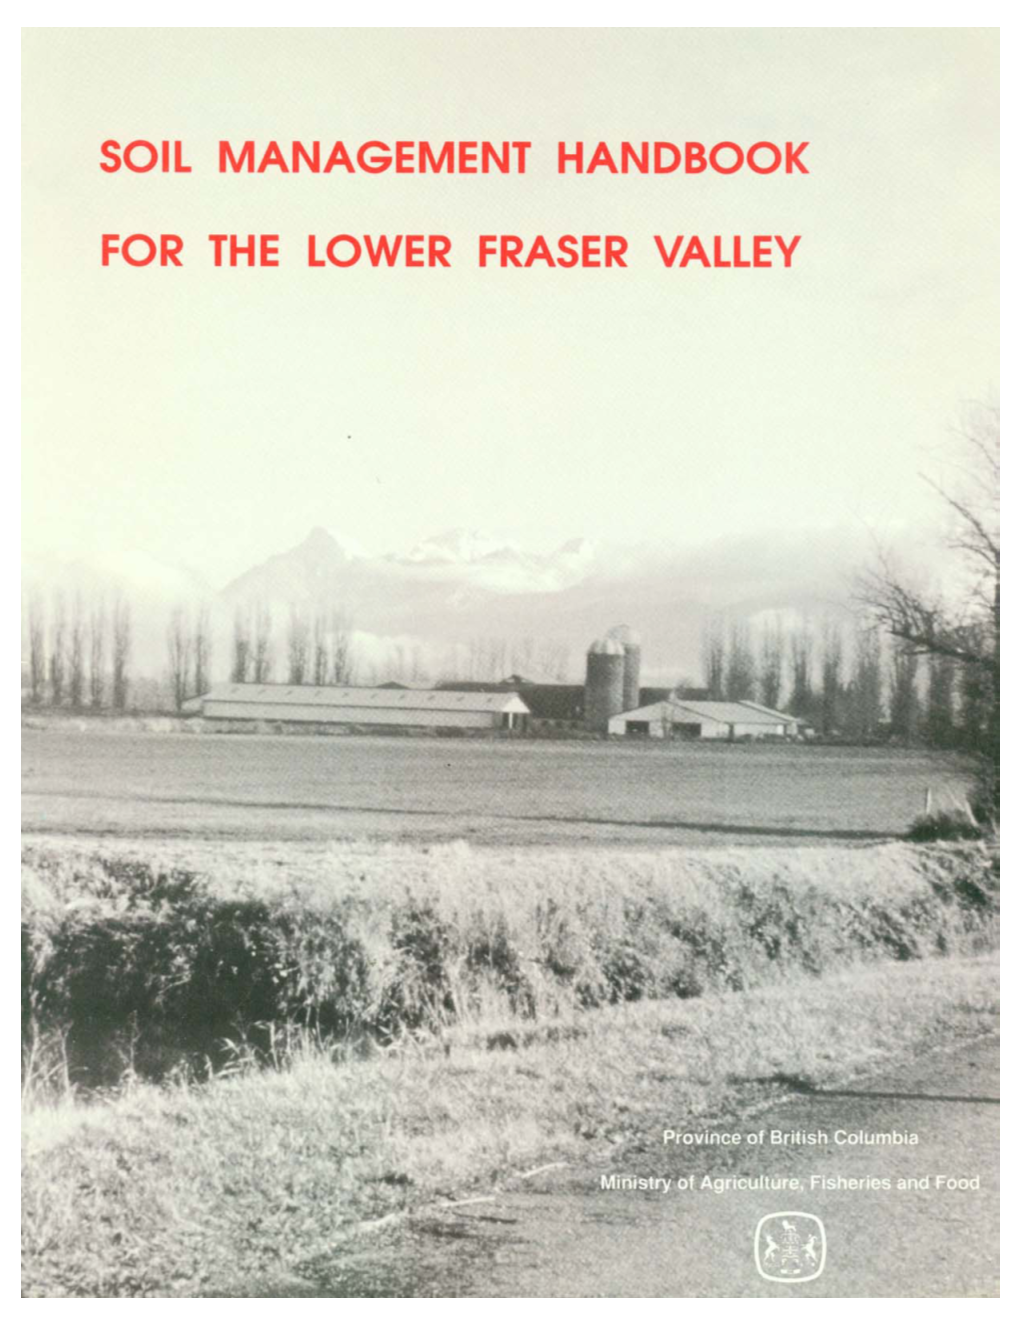 Soil Management Handbook for the Lower Fraser Valley